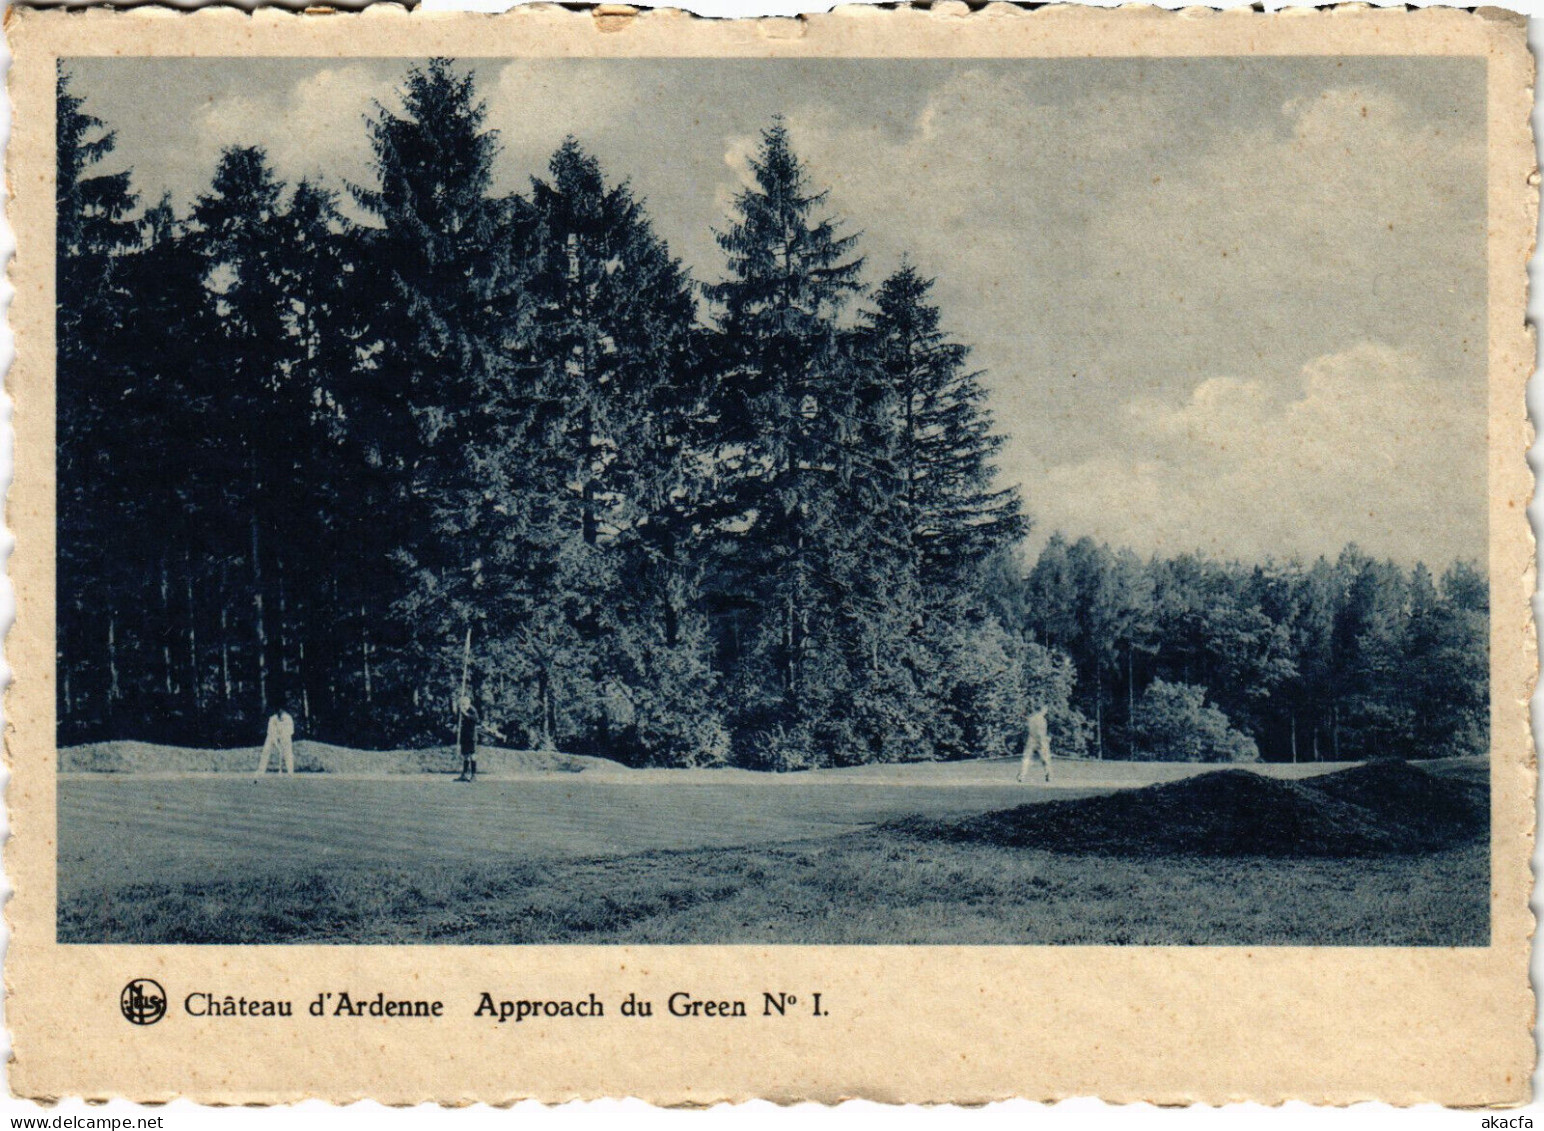 PC GOLF, SPORT, ACHATEAU D'ARDENNE, APPROACH DU GREEN, Vintage Postcard (b51241) - Golf